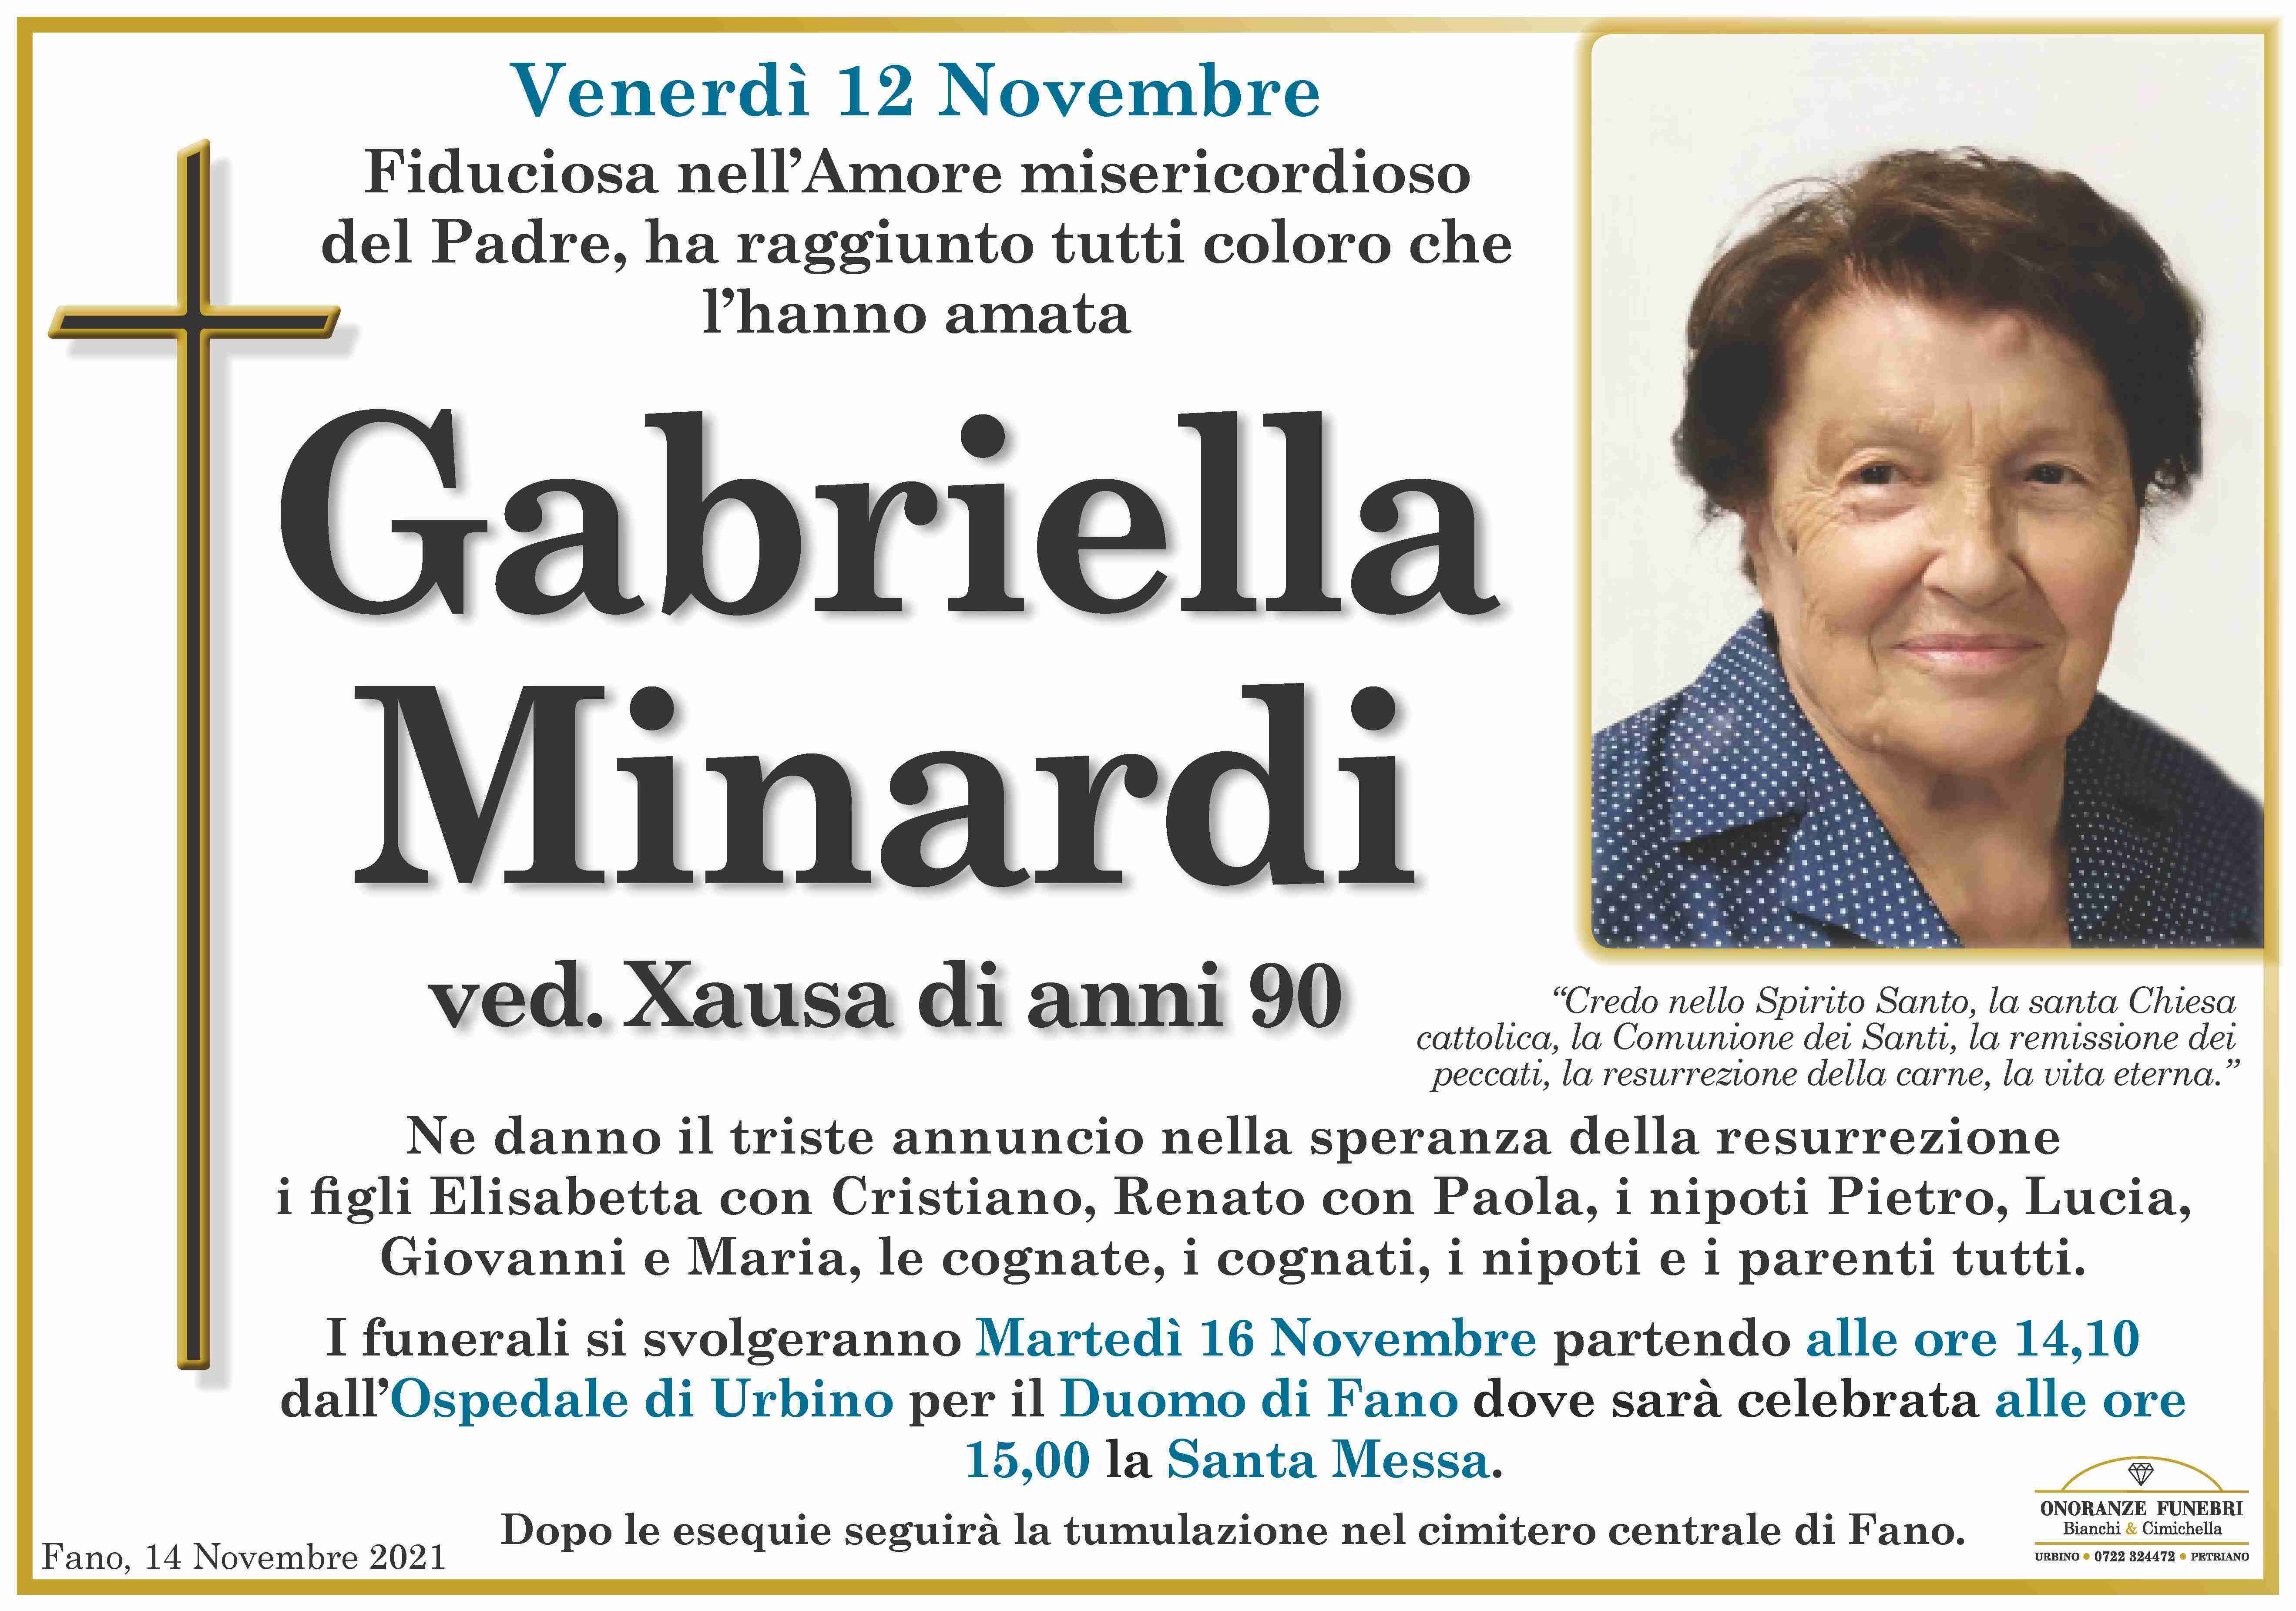 Gabriella Minardi